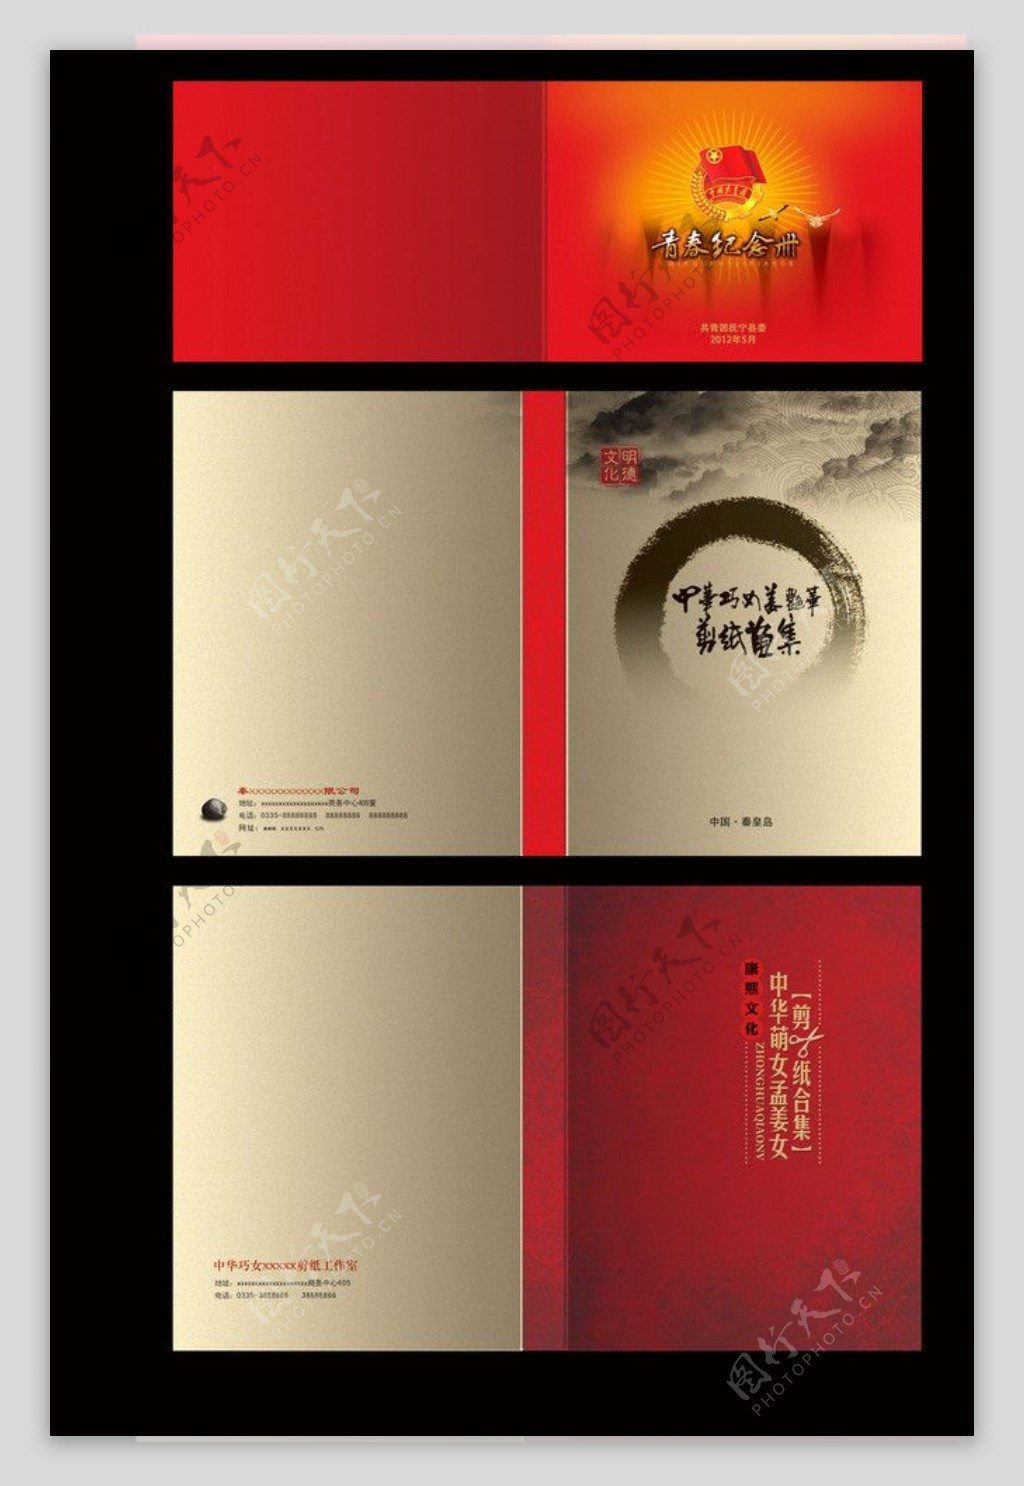 中国红封面模板图片